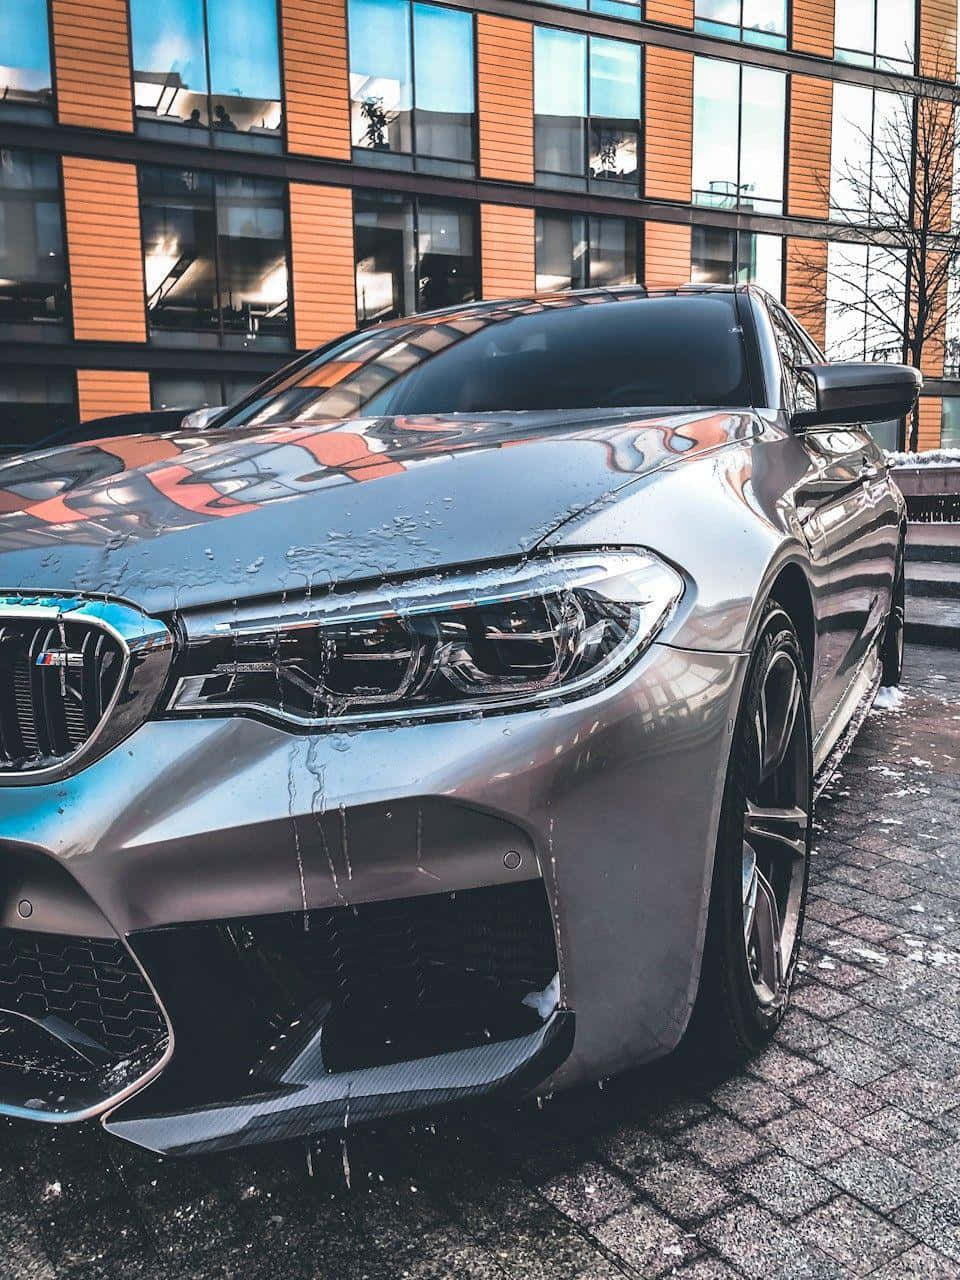 Den BMW M Superbil til at fange de bedste udsigter. Wallpaper